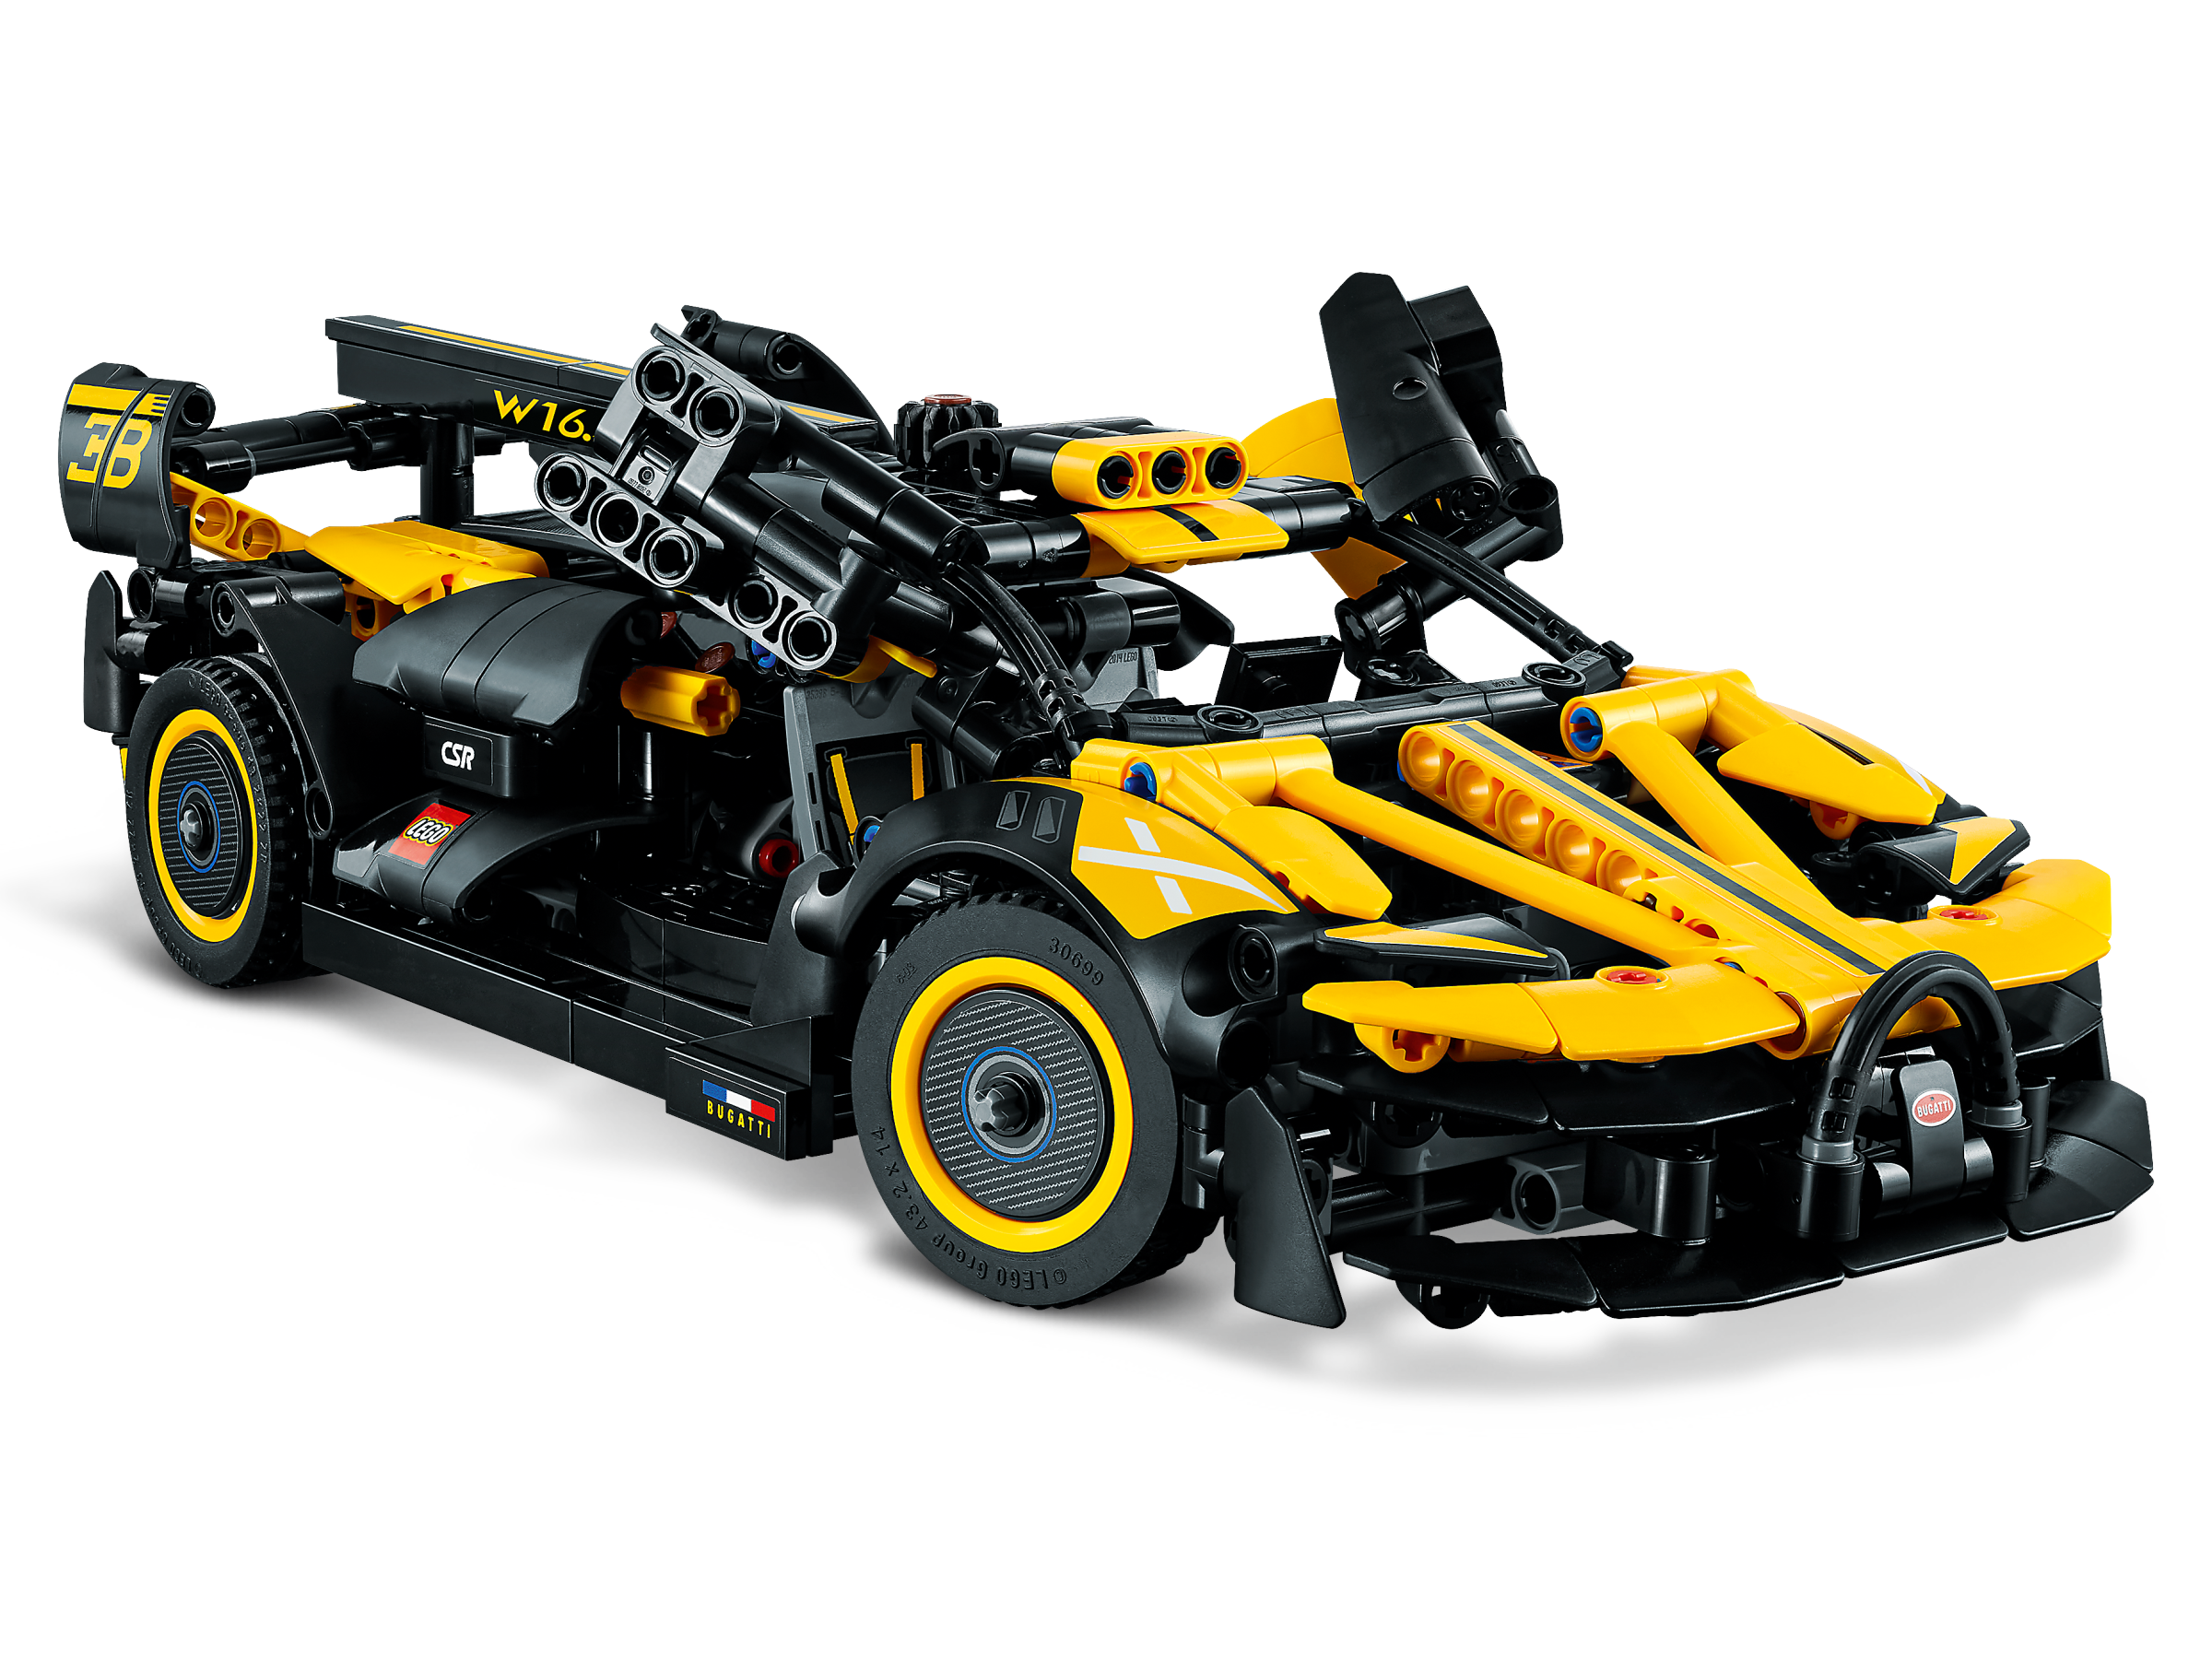 Lego Technic Le Bolide Bugatti - 42151